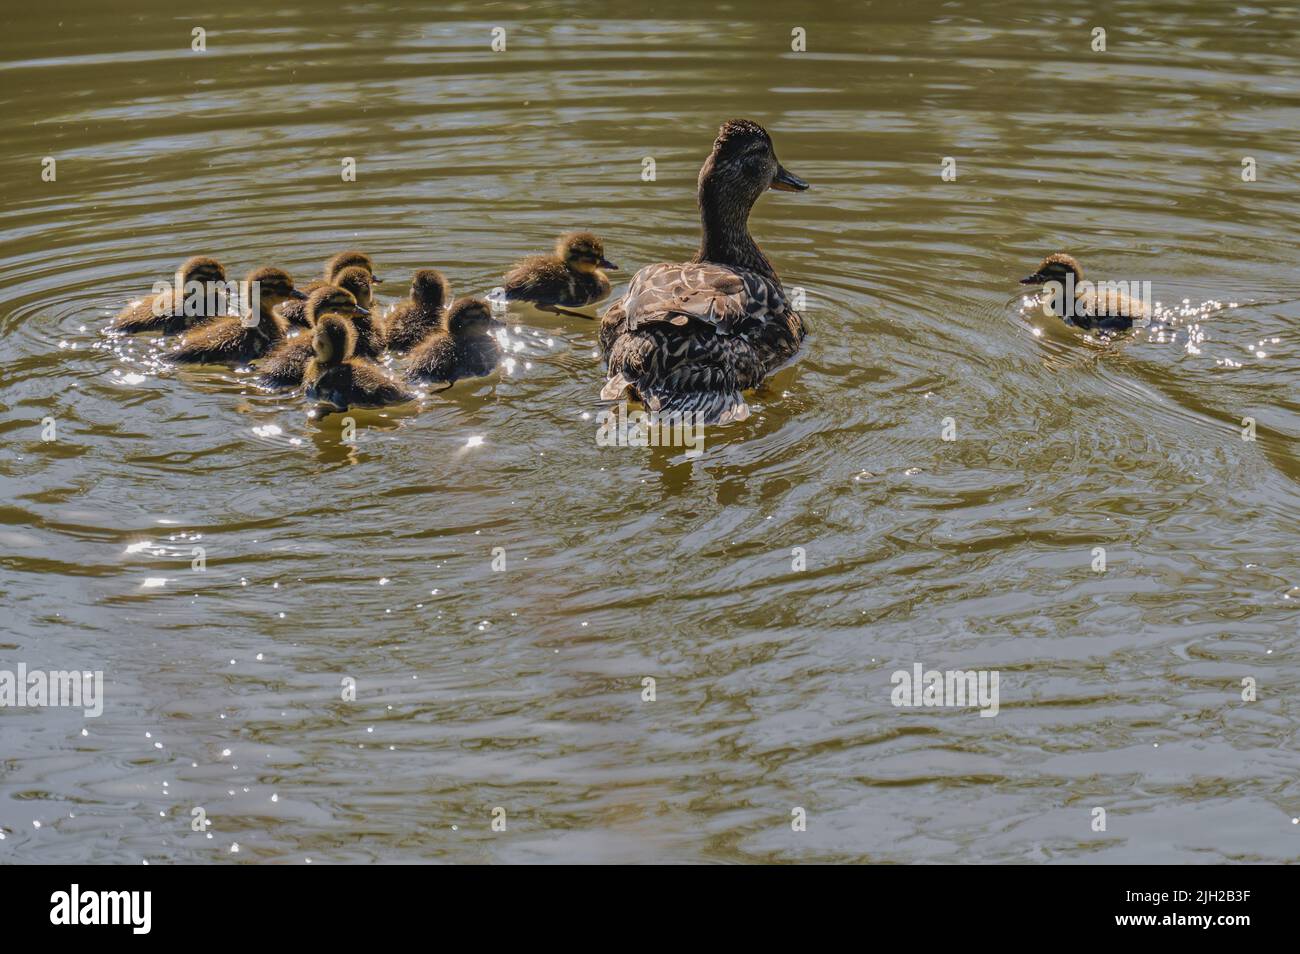 Mutter Ente und Entlein flauschige Enten Stockente, die zusammen mit Mutter Ente in einem See schwimmt Stockfoto